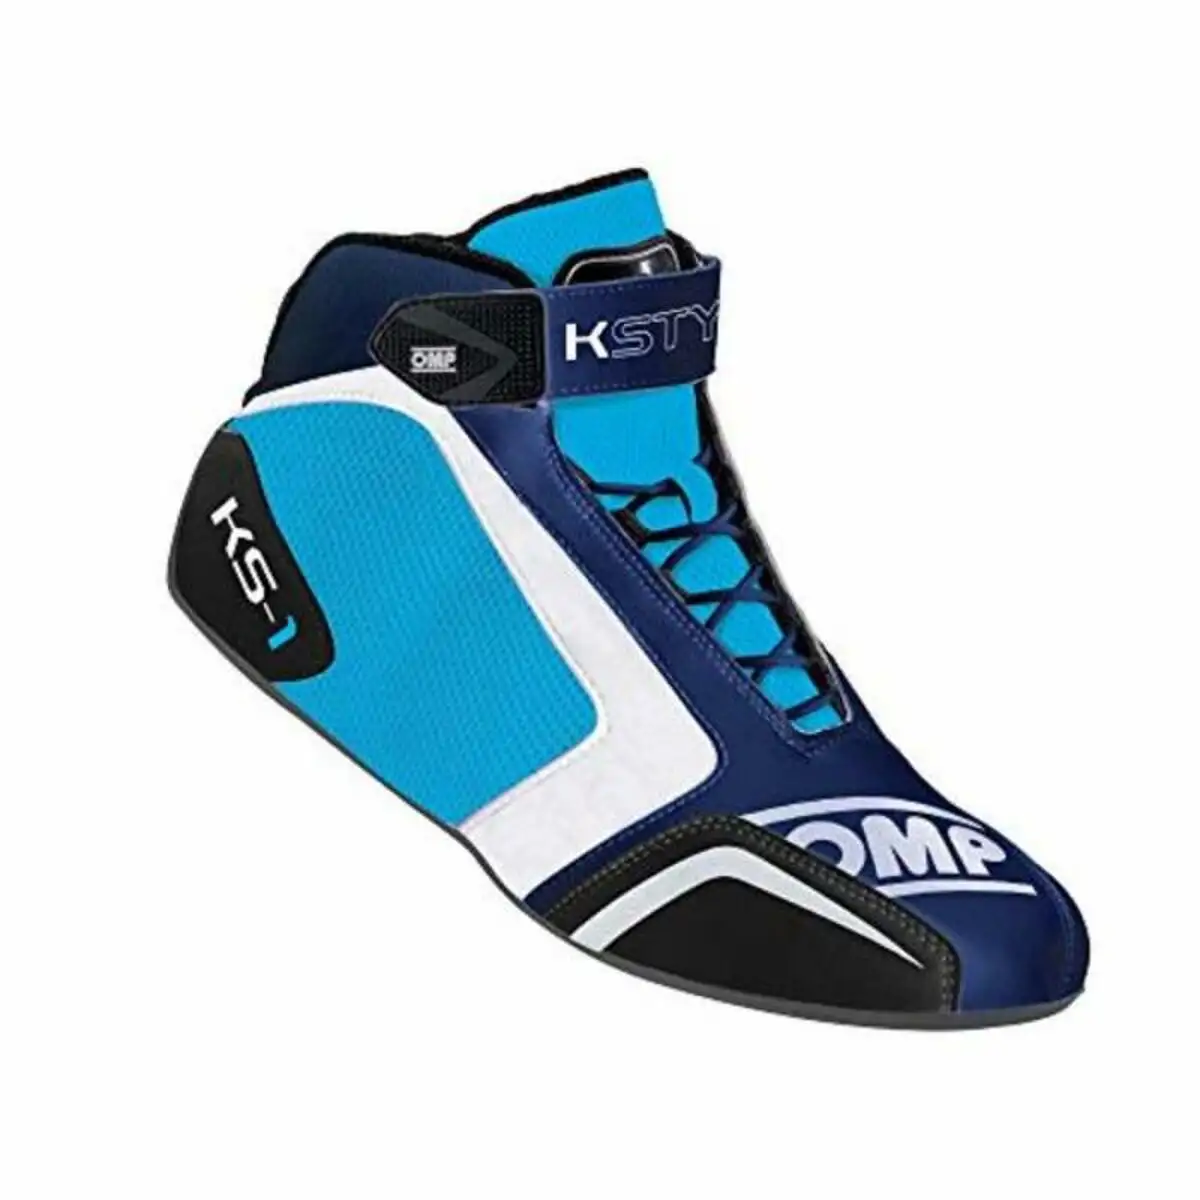 Chaussures de course omp shoes cyan blue marine_5373. DIAYTAR SENEGAL - Où Choisir Devient une Découverte. Explorez notre boutique en ligne et trouvez des articles qui vous surprennent et vous ravissent à chaque clic.